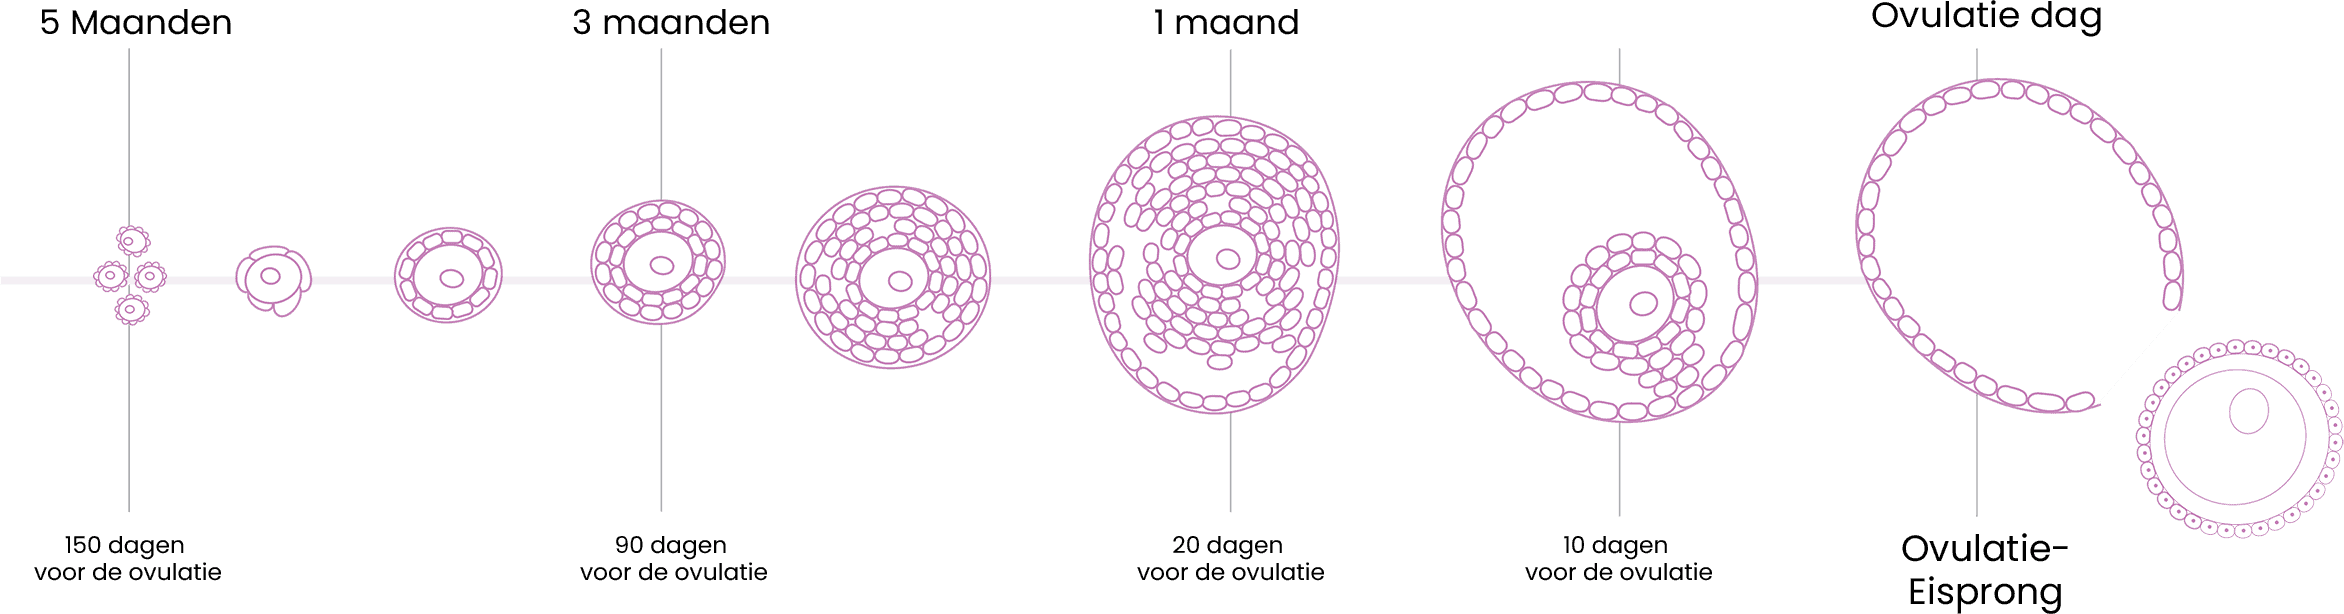 Schematische weergave eicelontwikkeling